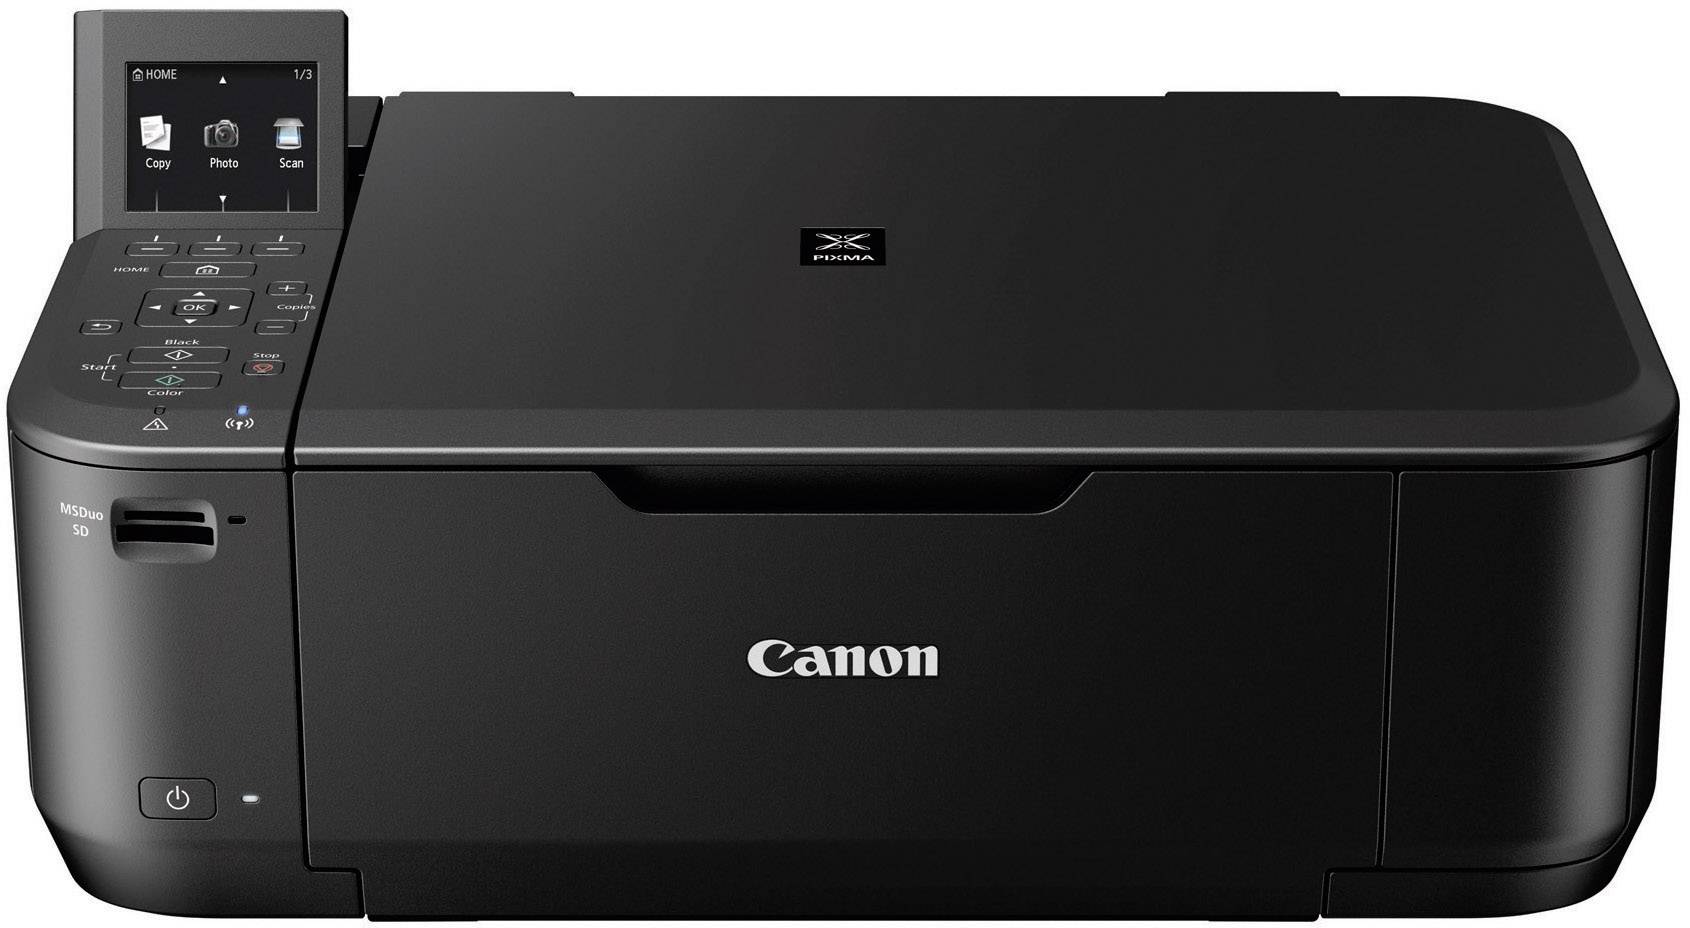 canon printer internet explorer 9